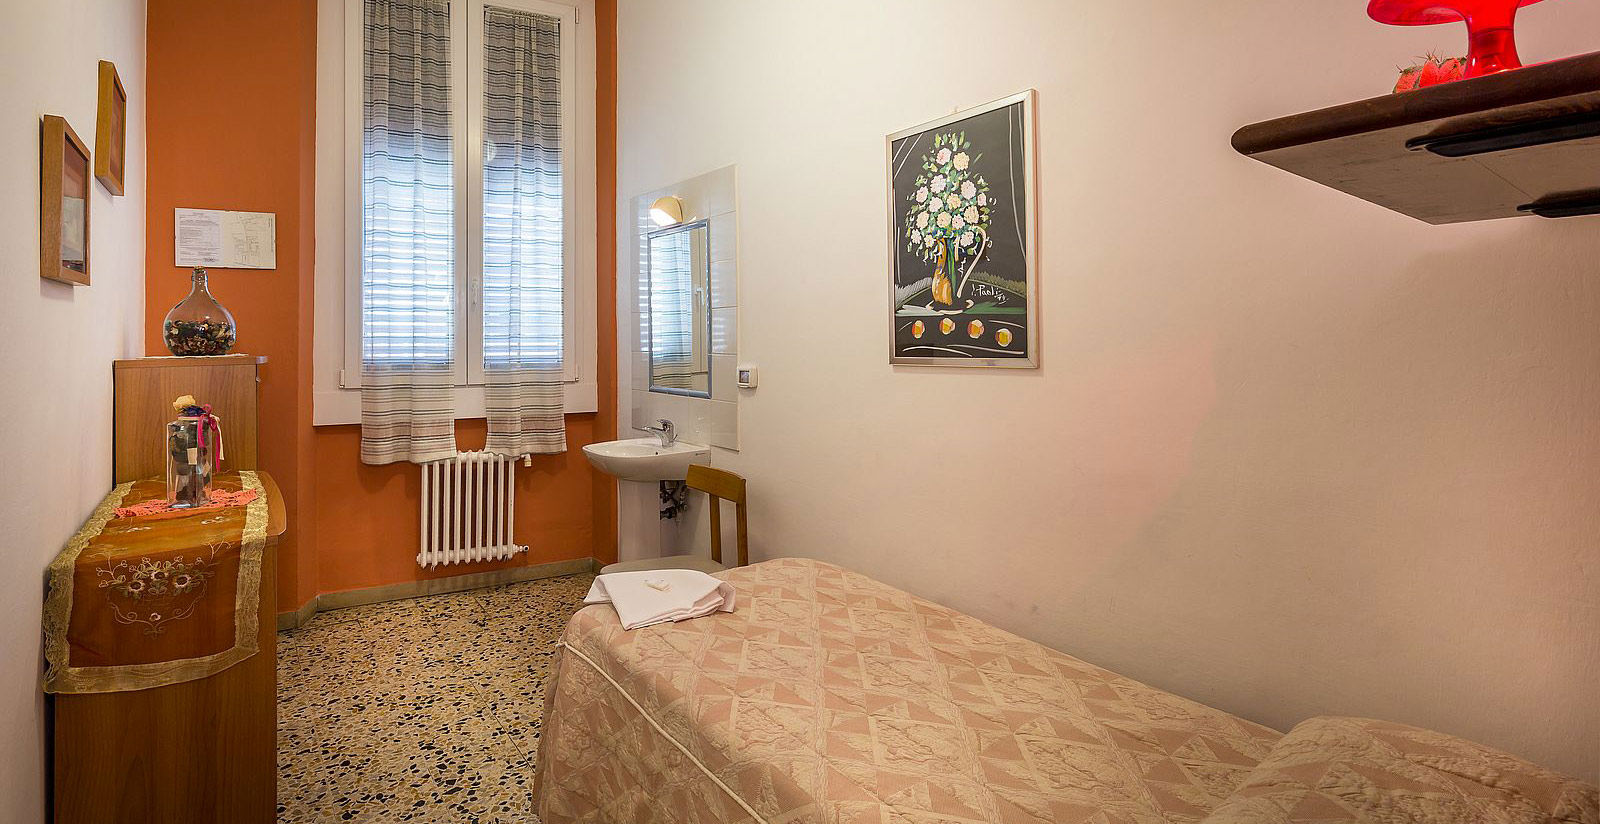 Hotel Ferretti - Camera Singola con bagno in comune 3